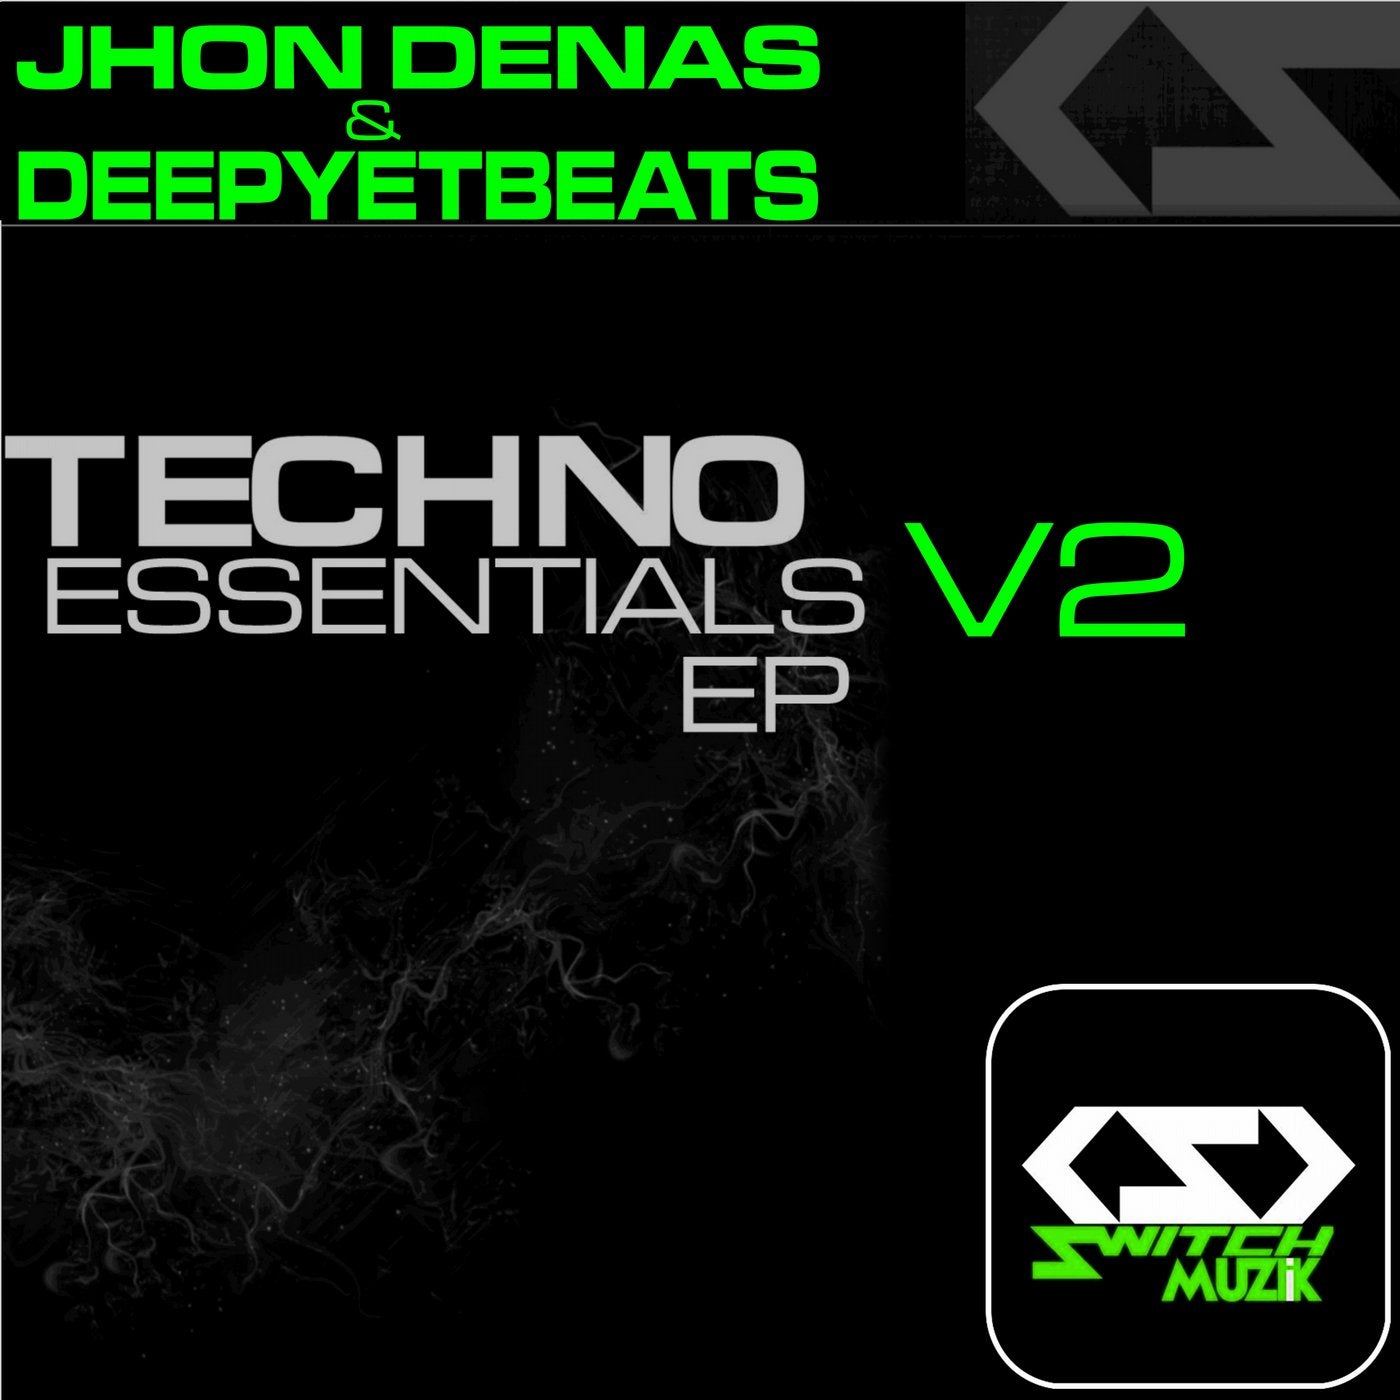 Techno Essentials EP V2